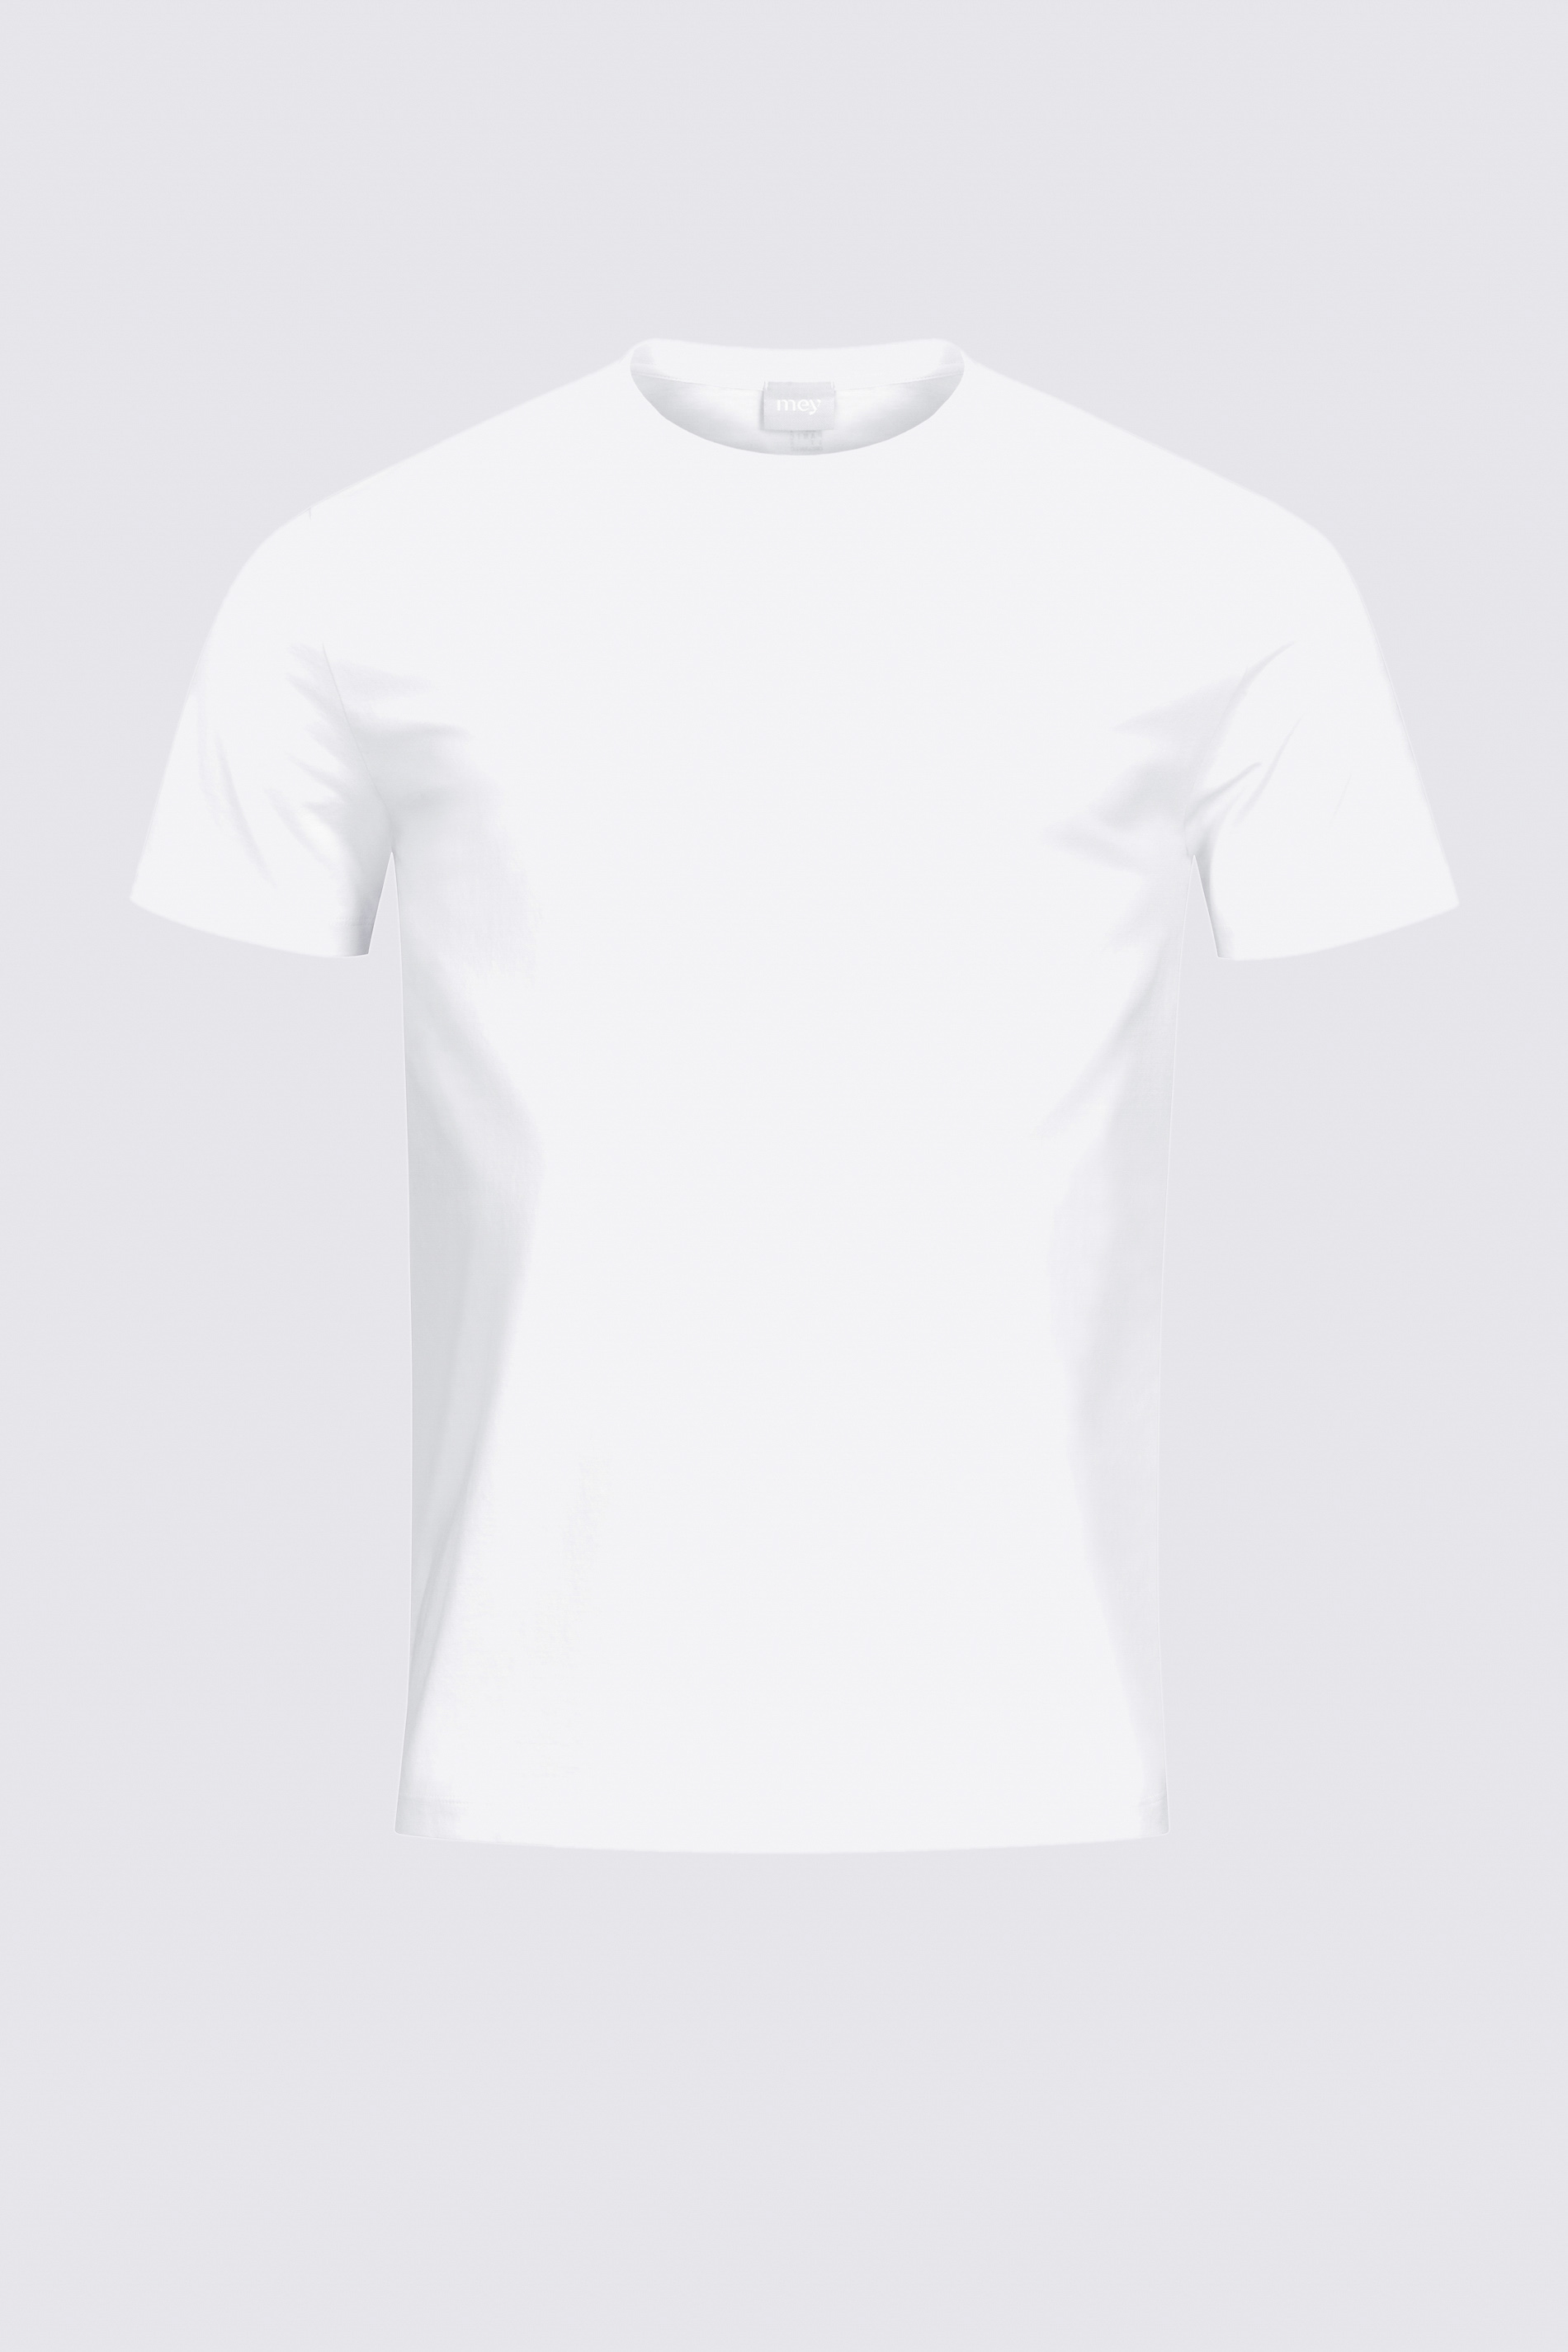 T-Shirt Weiss Serie Relax Freisteller | mey®